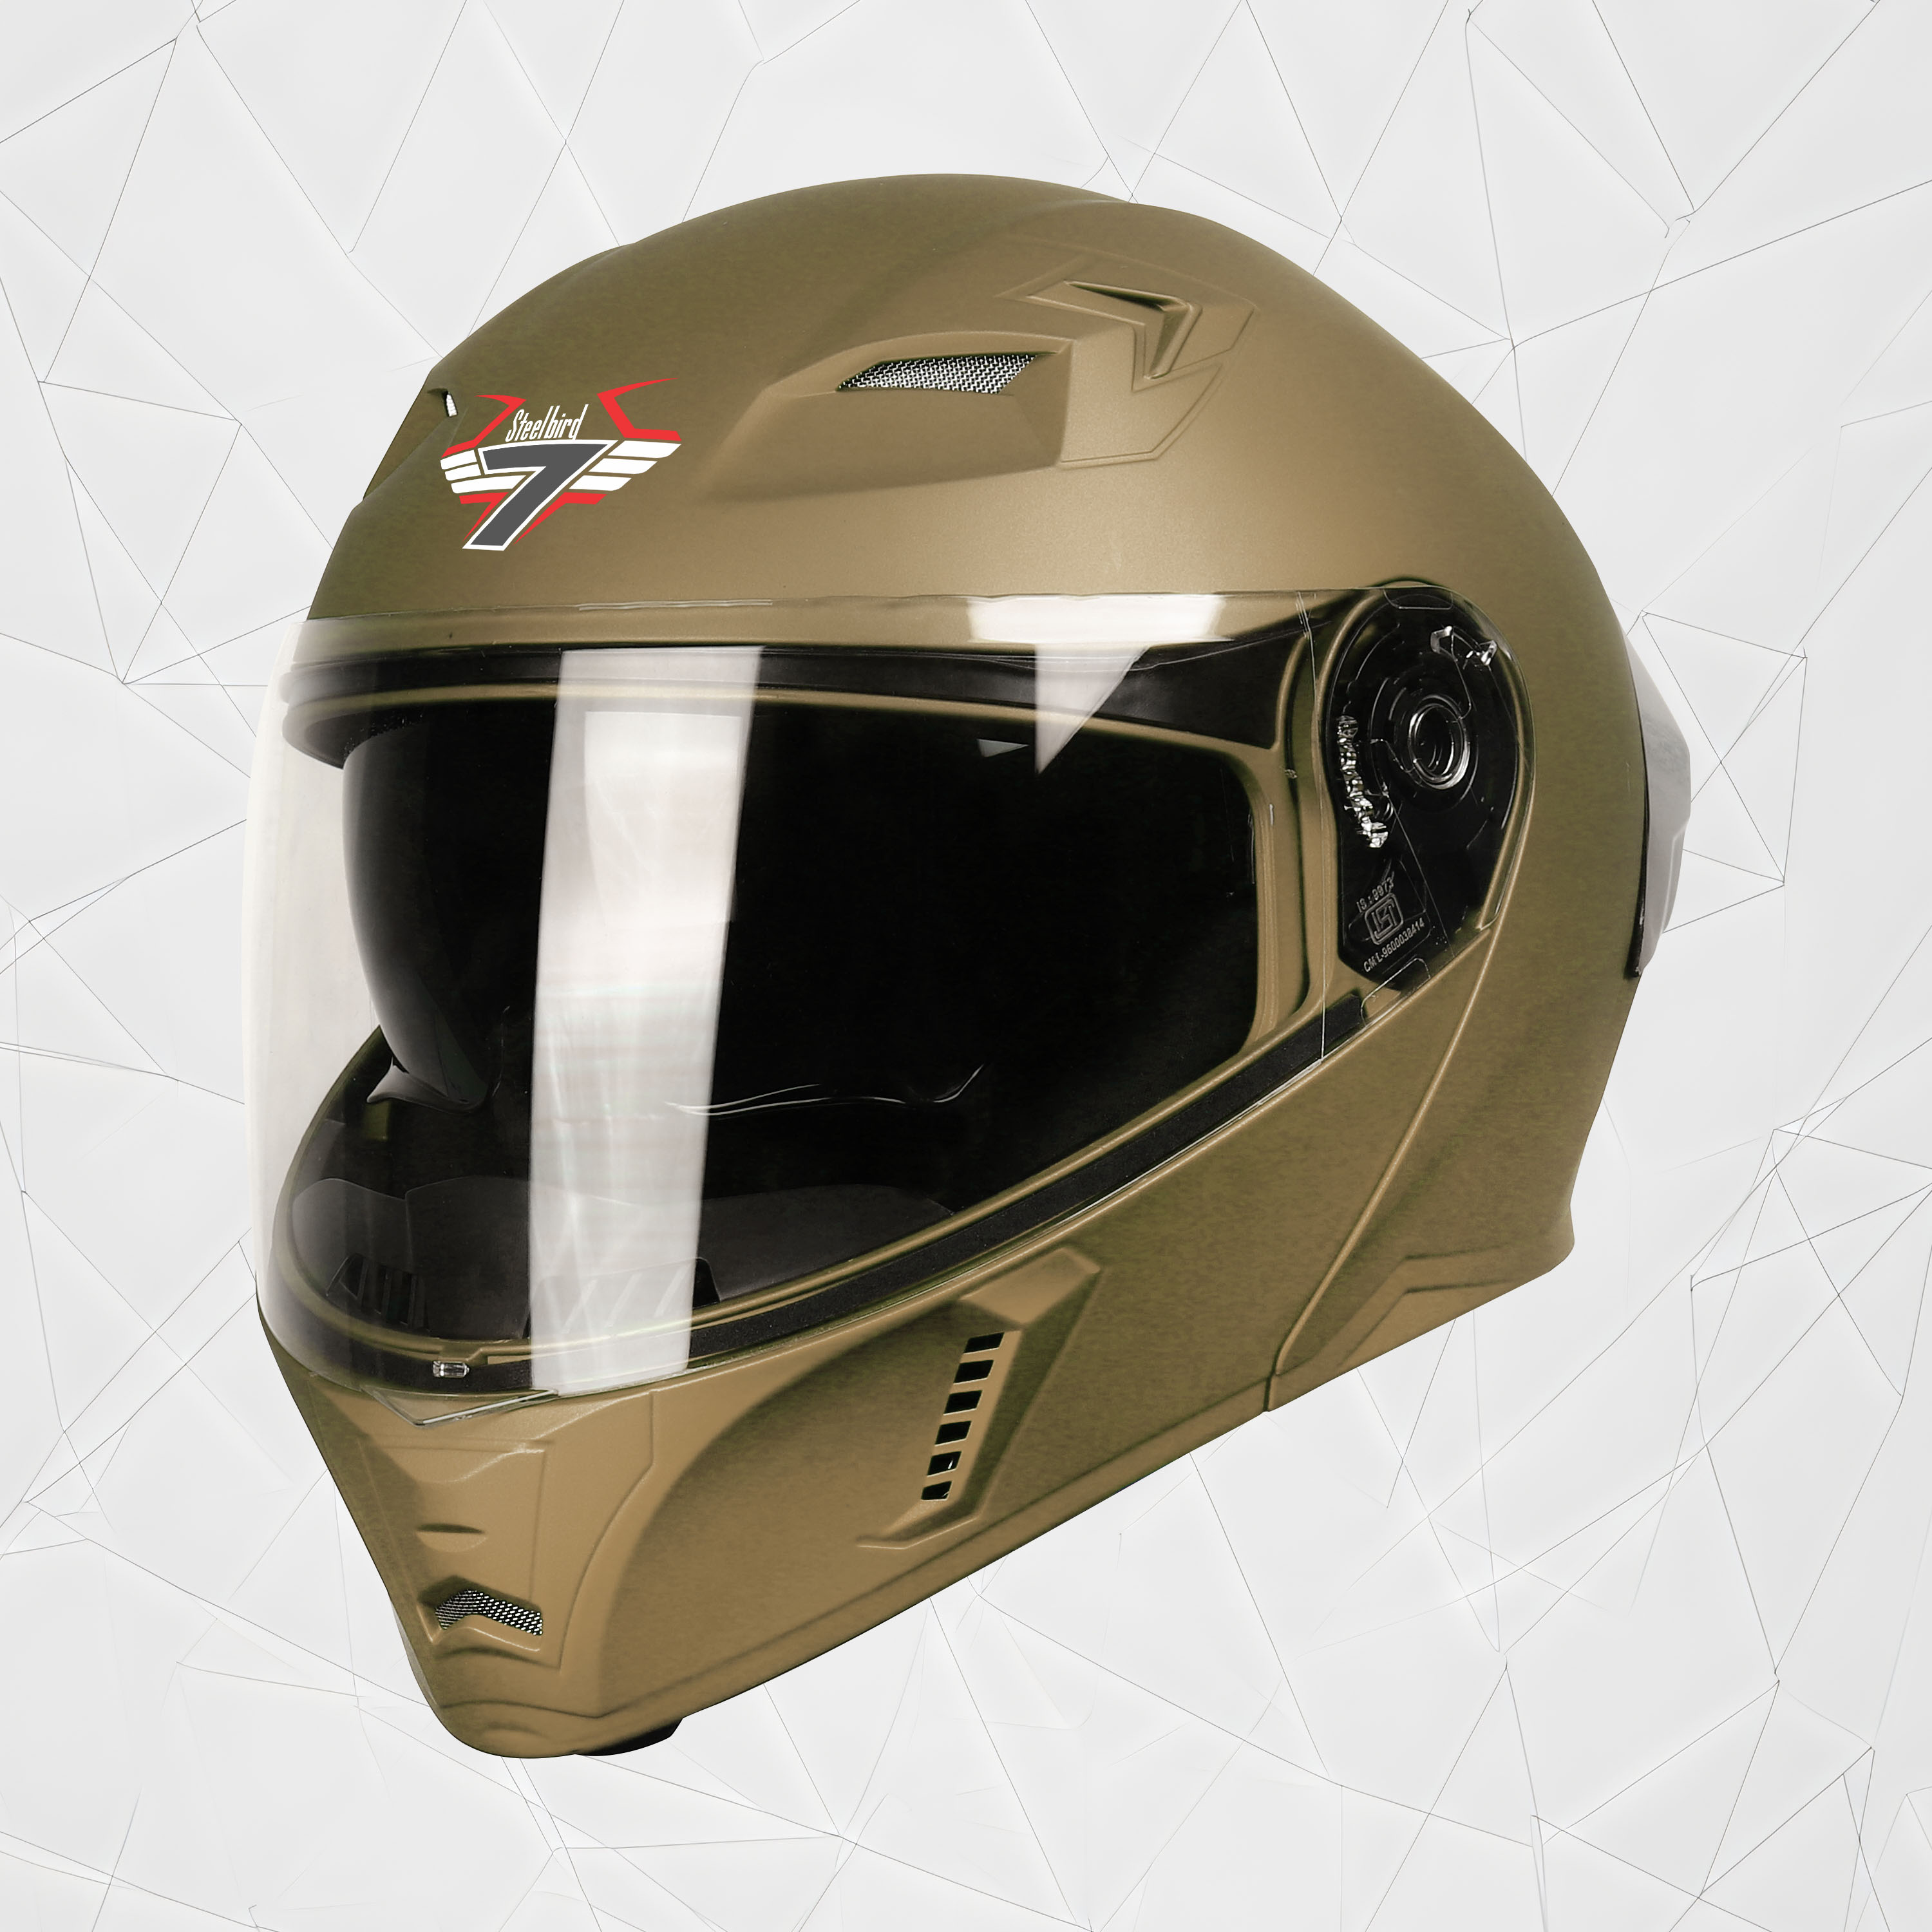 Steelbird SBA-20 7Wings ISI Certified Flip-Up Helmet With Black Spoiler For Men And Women With Inner Smoke Sun Shield (Matt Desert Storm)